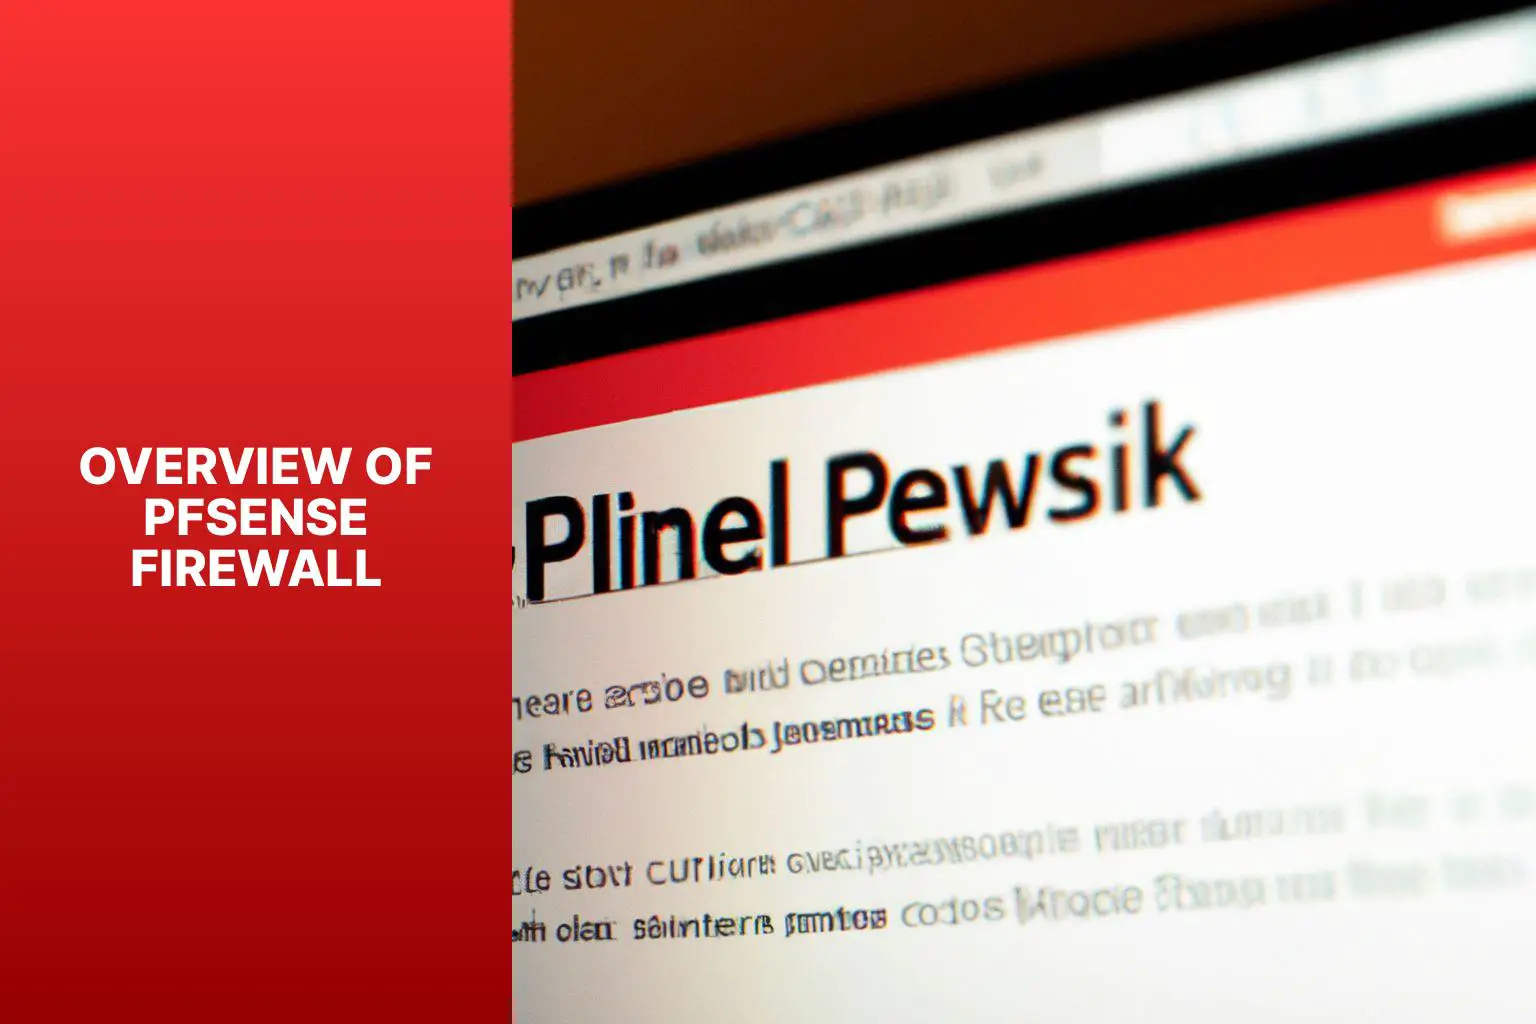 Overview of pfSense Firewall - How to install openvpn on a pfSense Firewall 